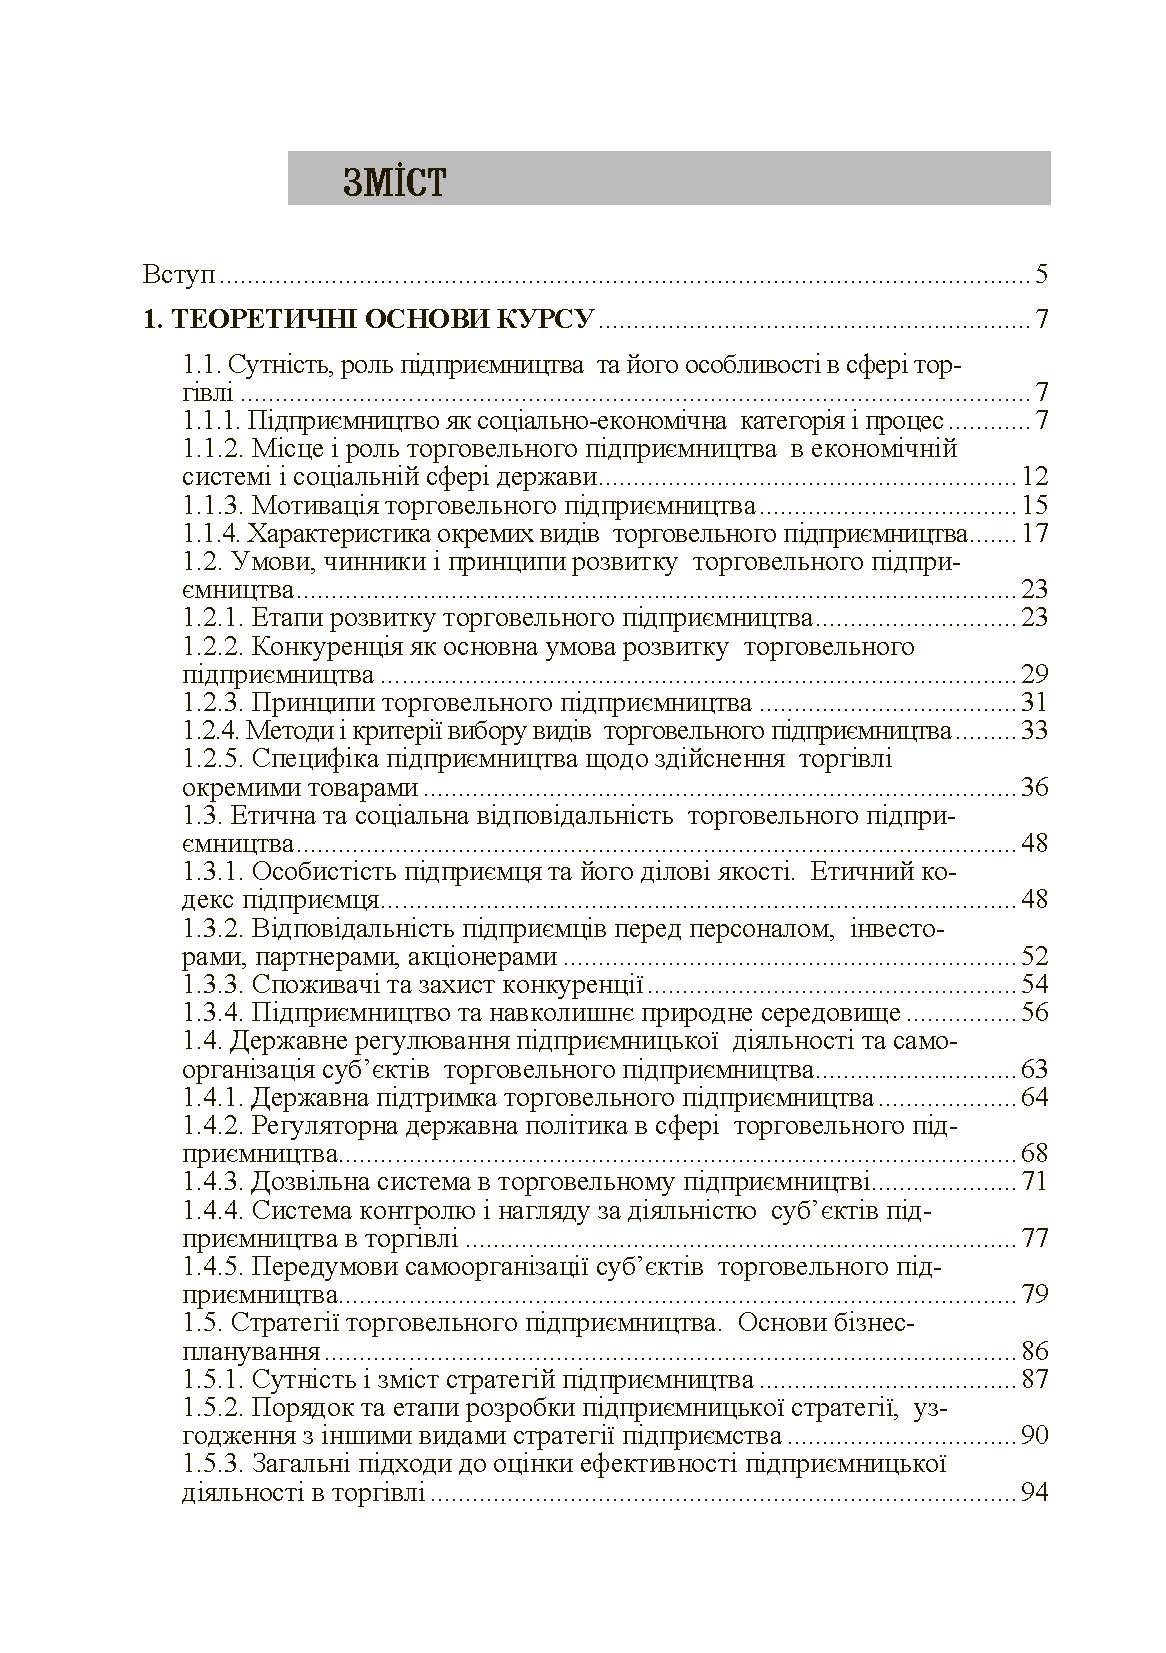 Торговельне підприємництво Навчальний посібник (2019 год)). Автор — Юрко І.В.. 